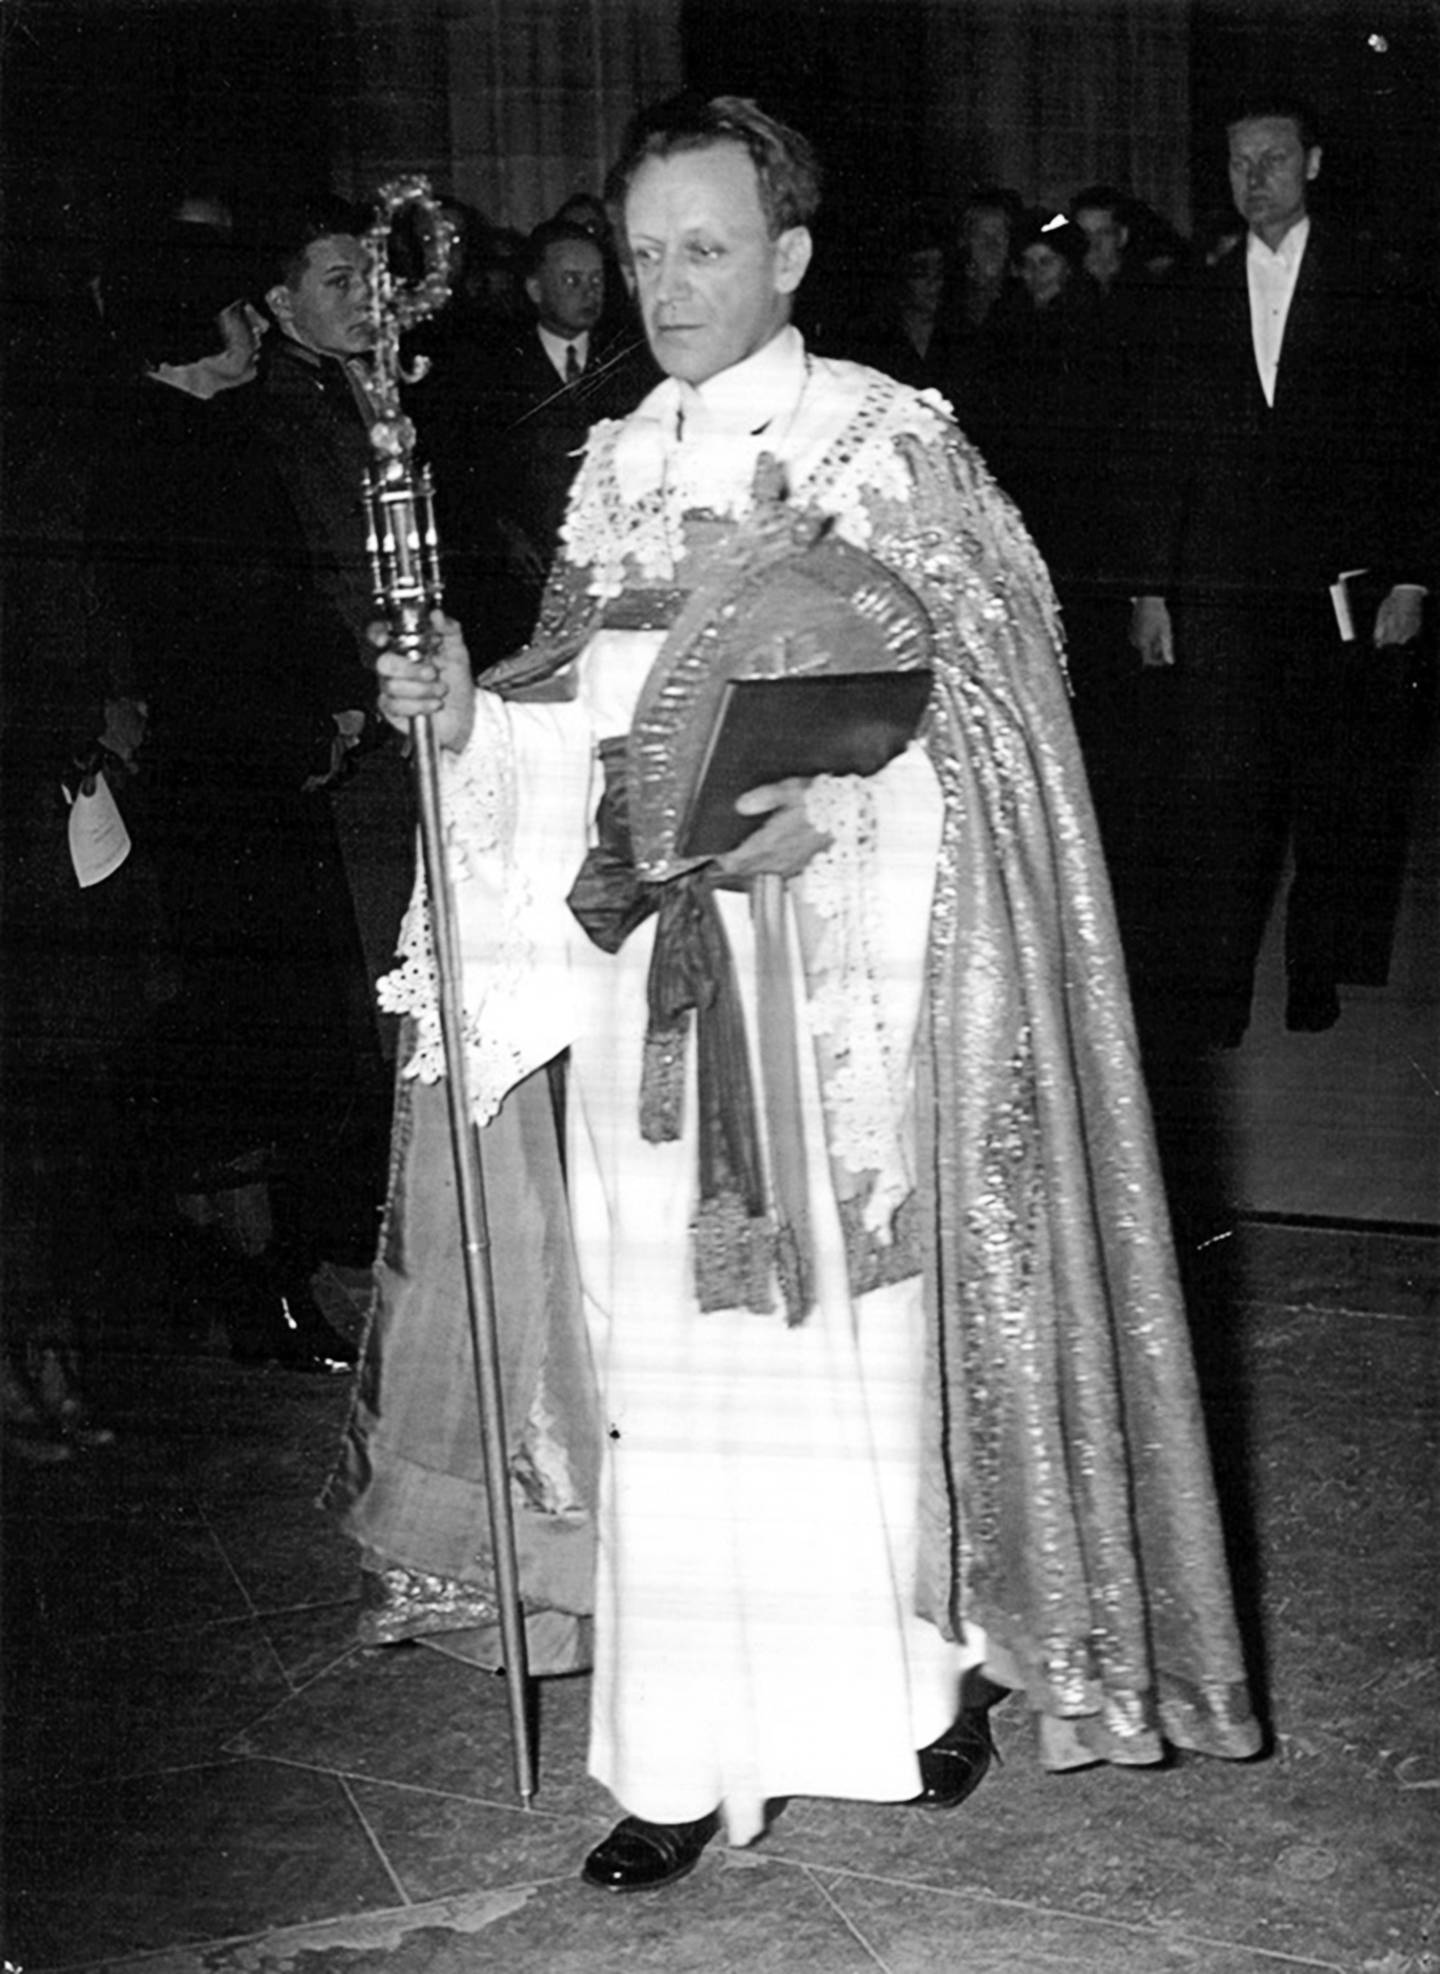 Ärkebiskopen Erling Eidem i Uppsala på väg upp till altaret.
31 Januari 1937.